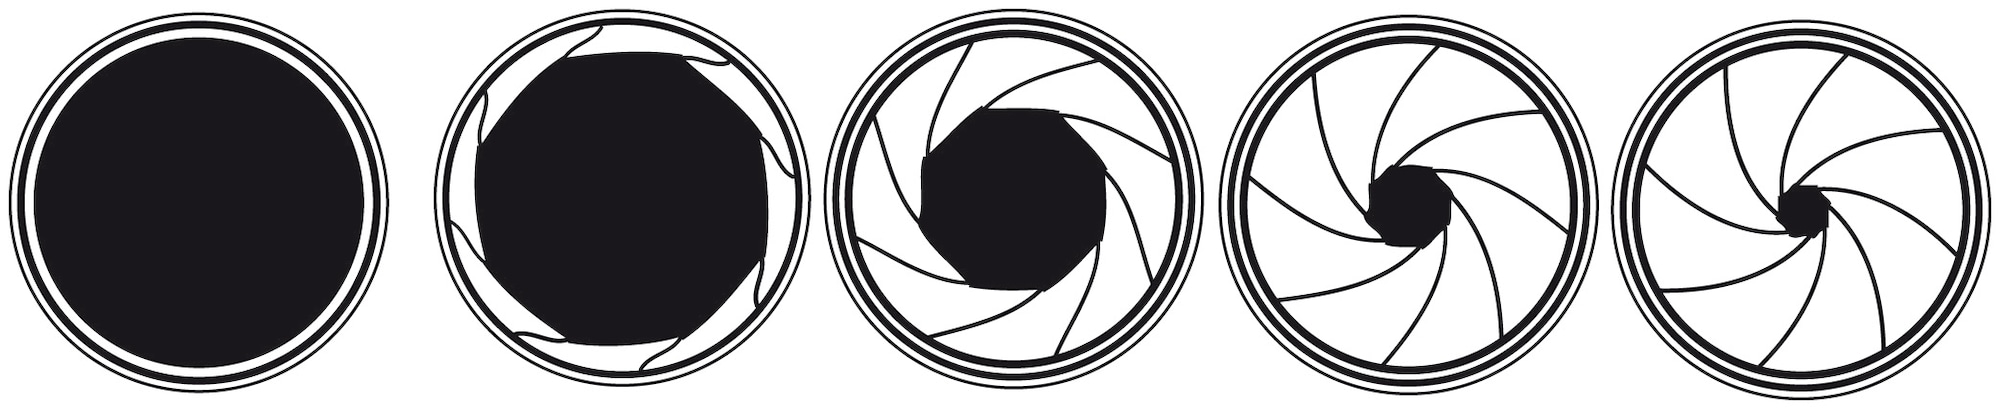 A representative images of various aperture diameters